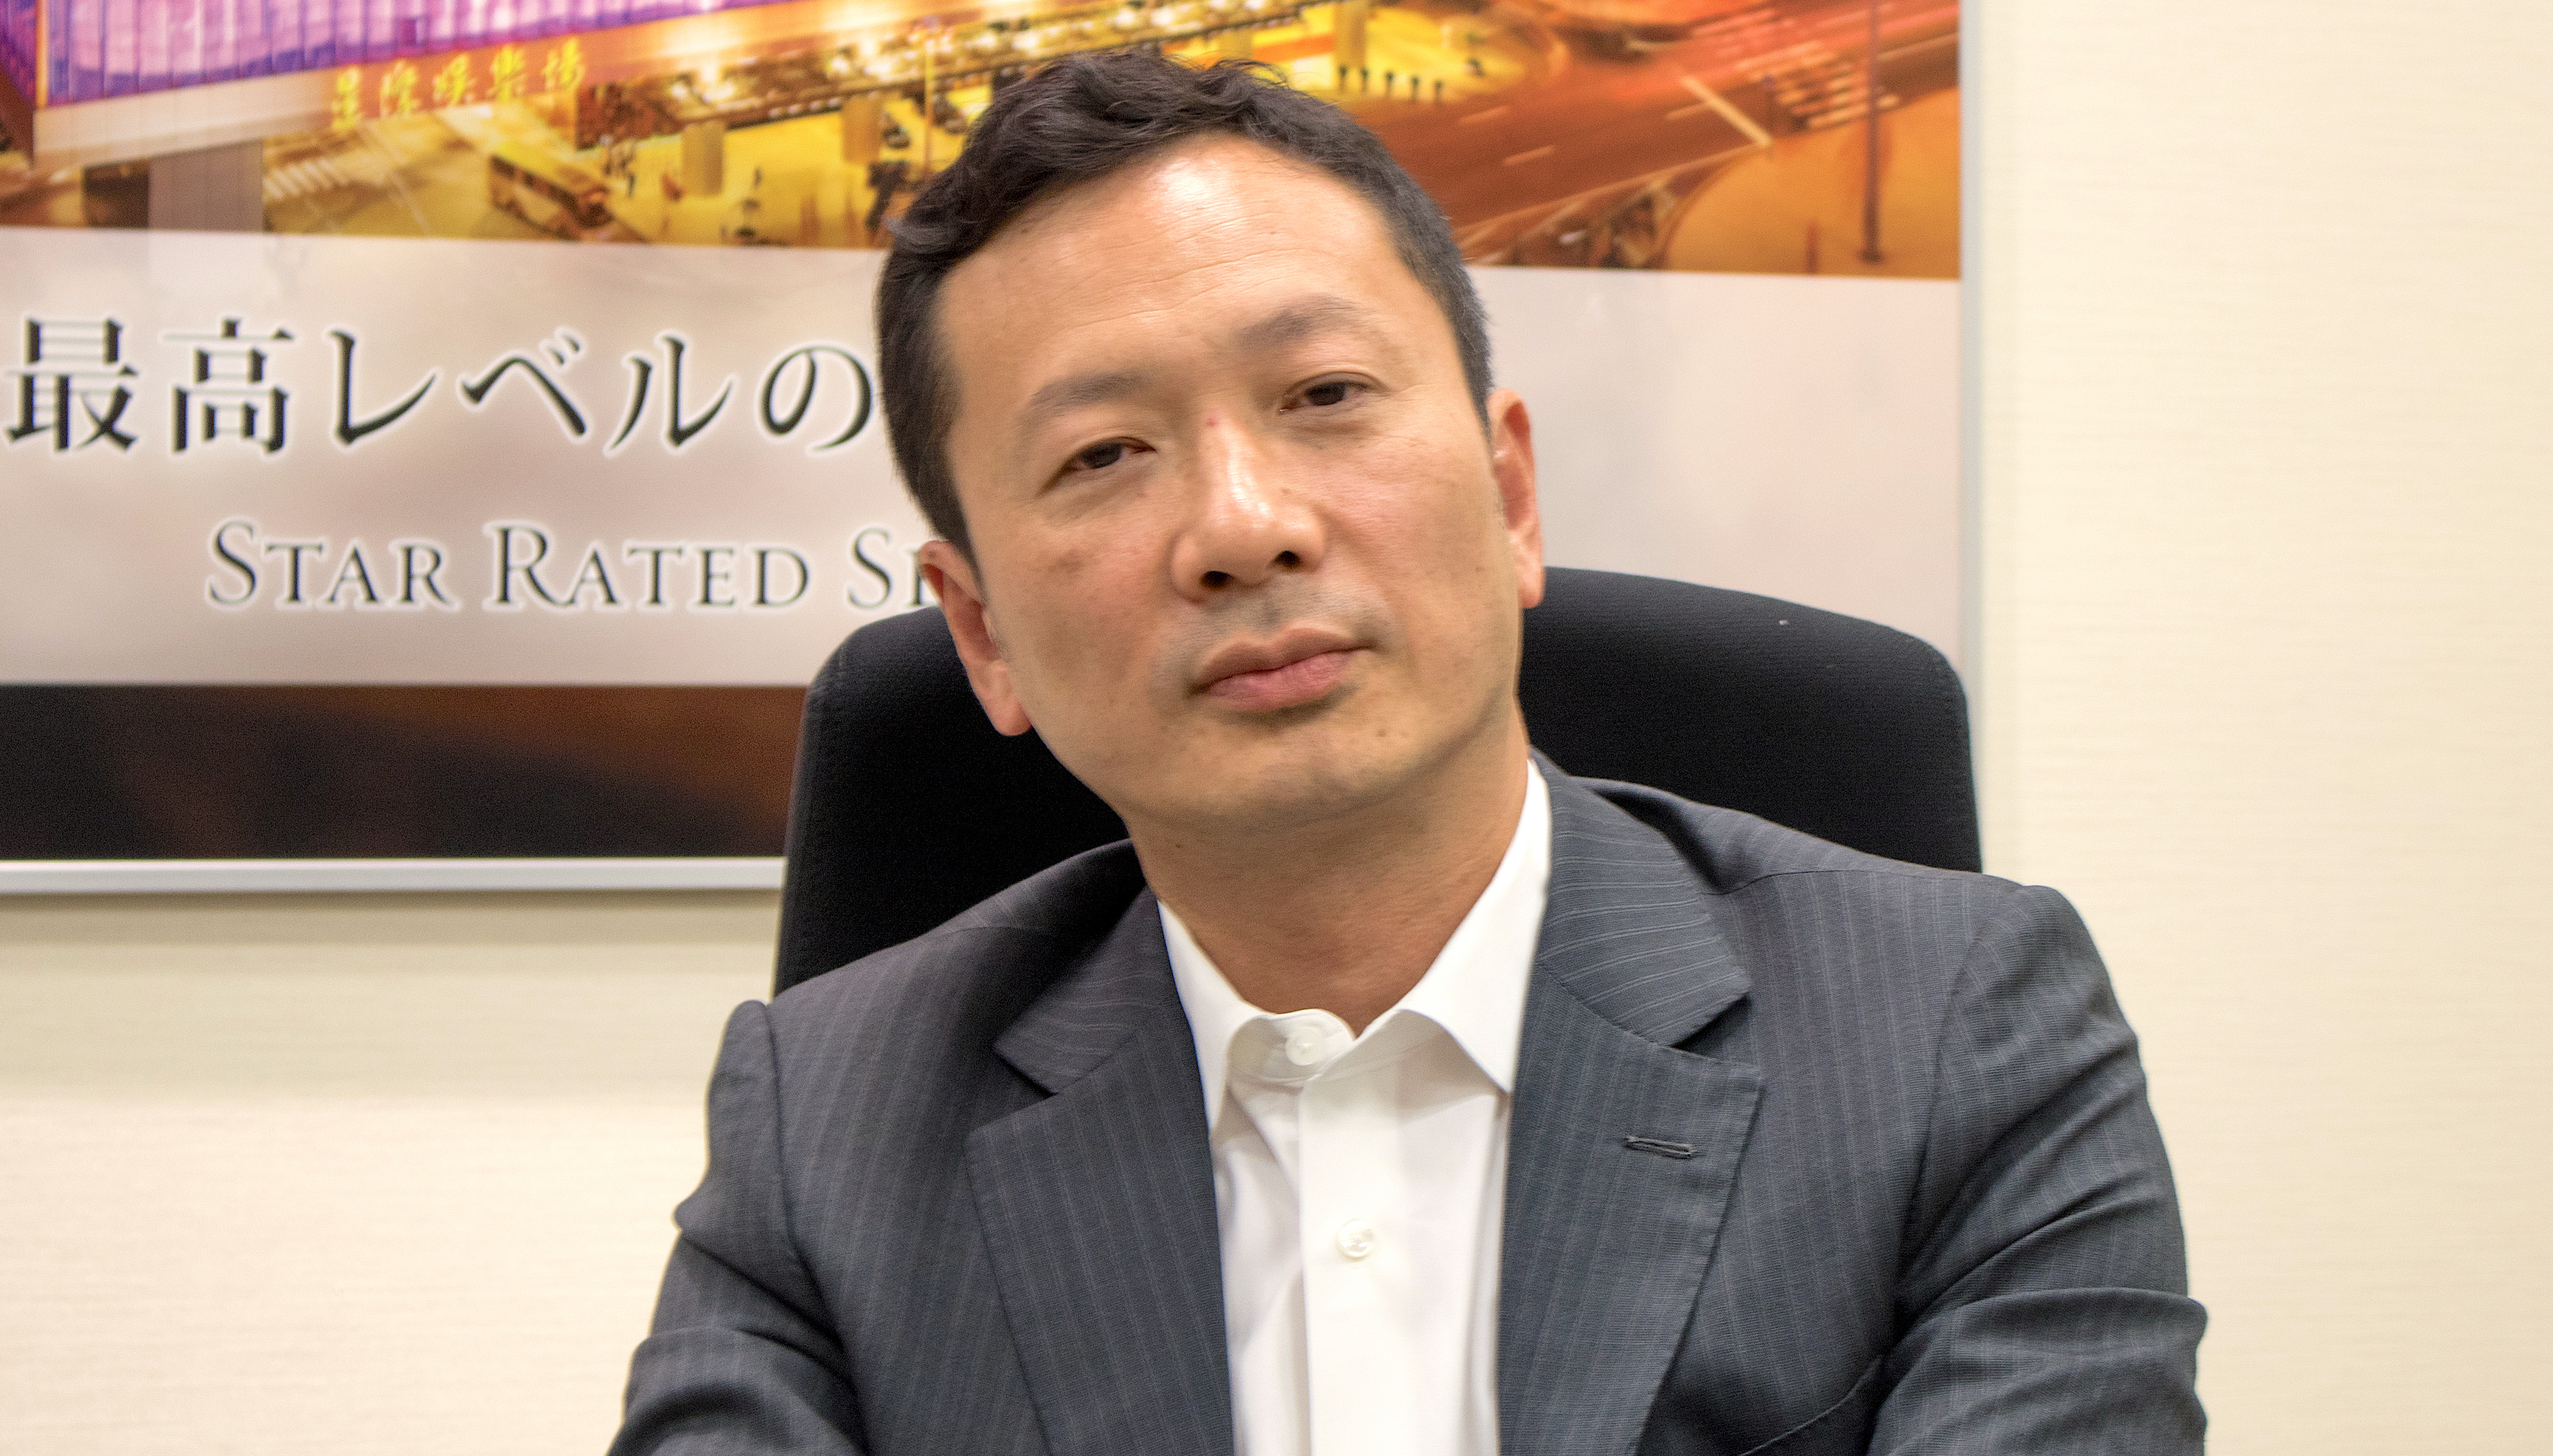 テッド チャン氏 ギャラクシー日本開発強化チームを指導 Agb Nippon